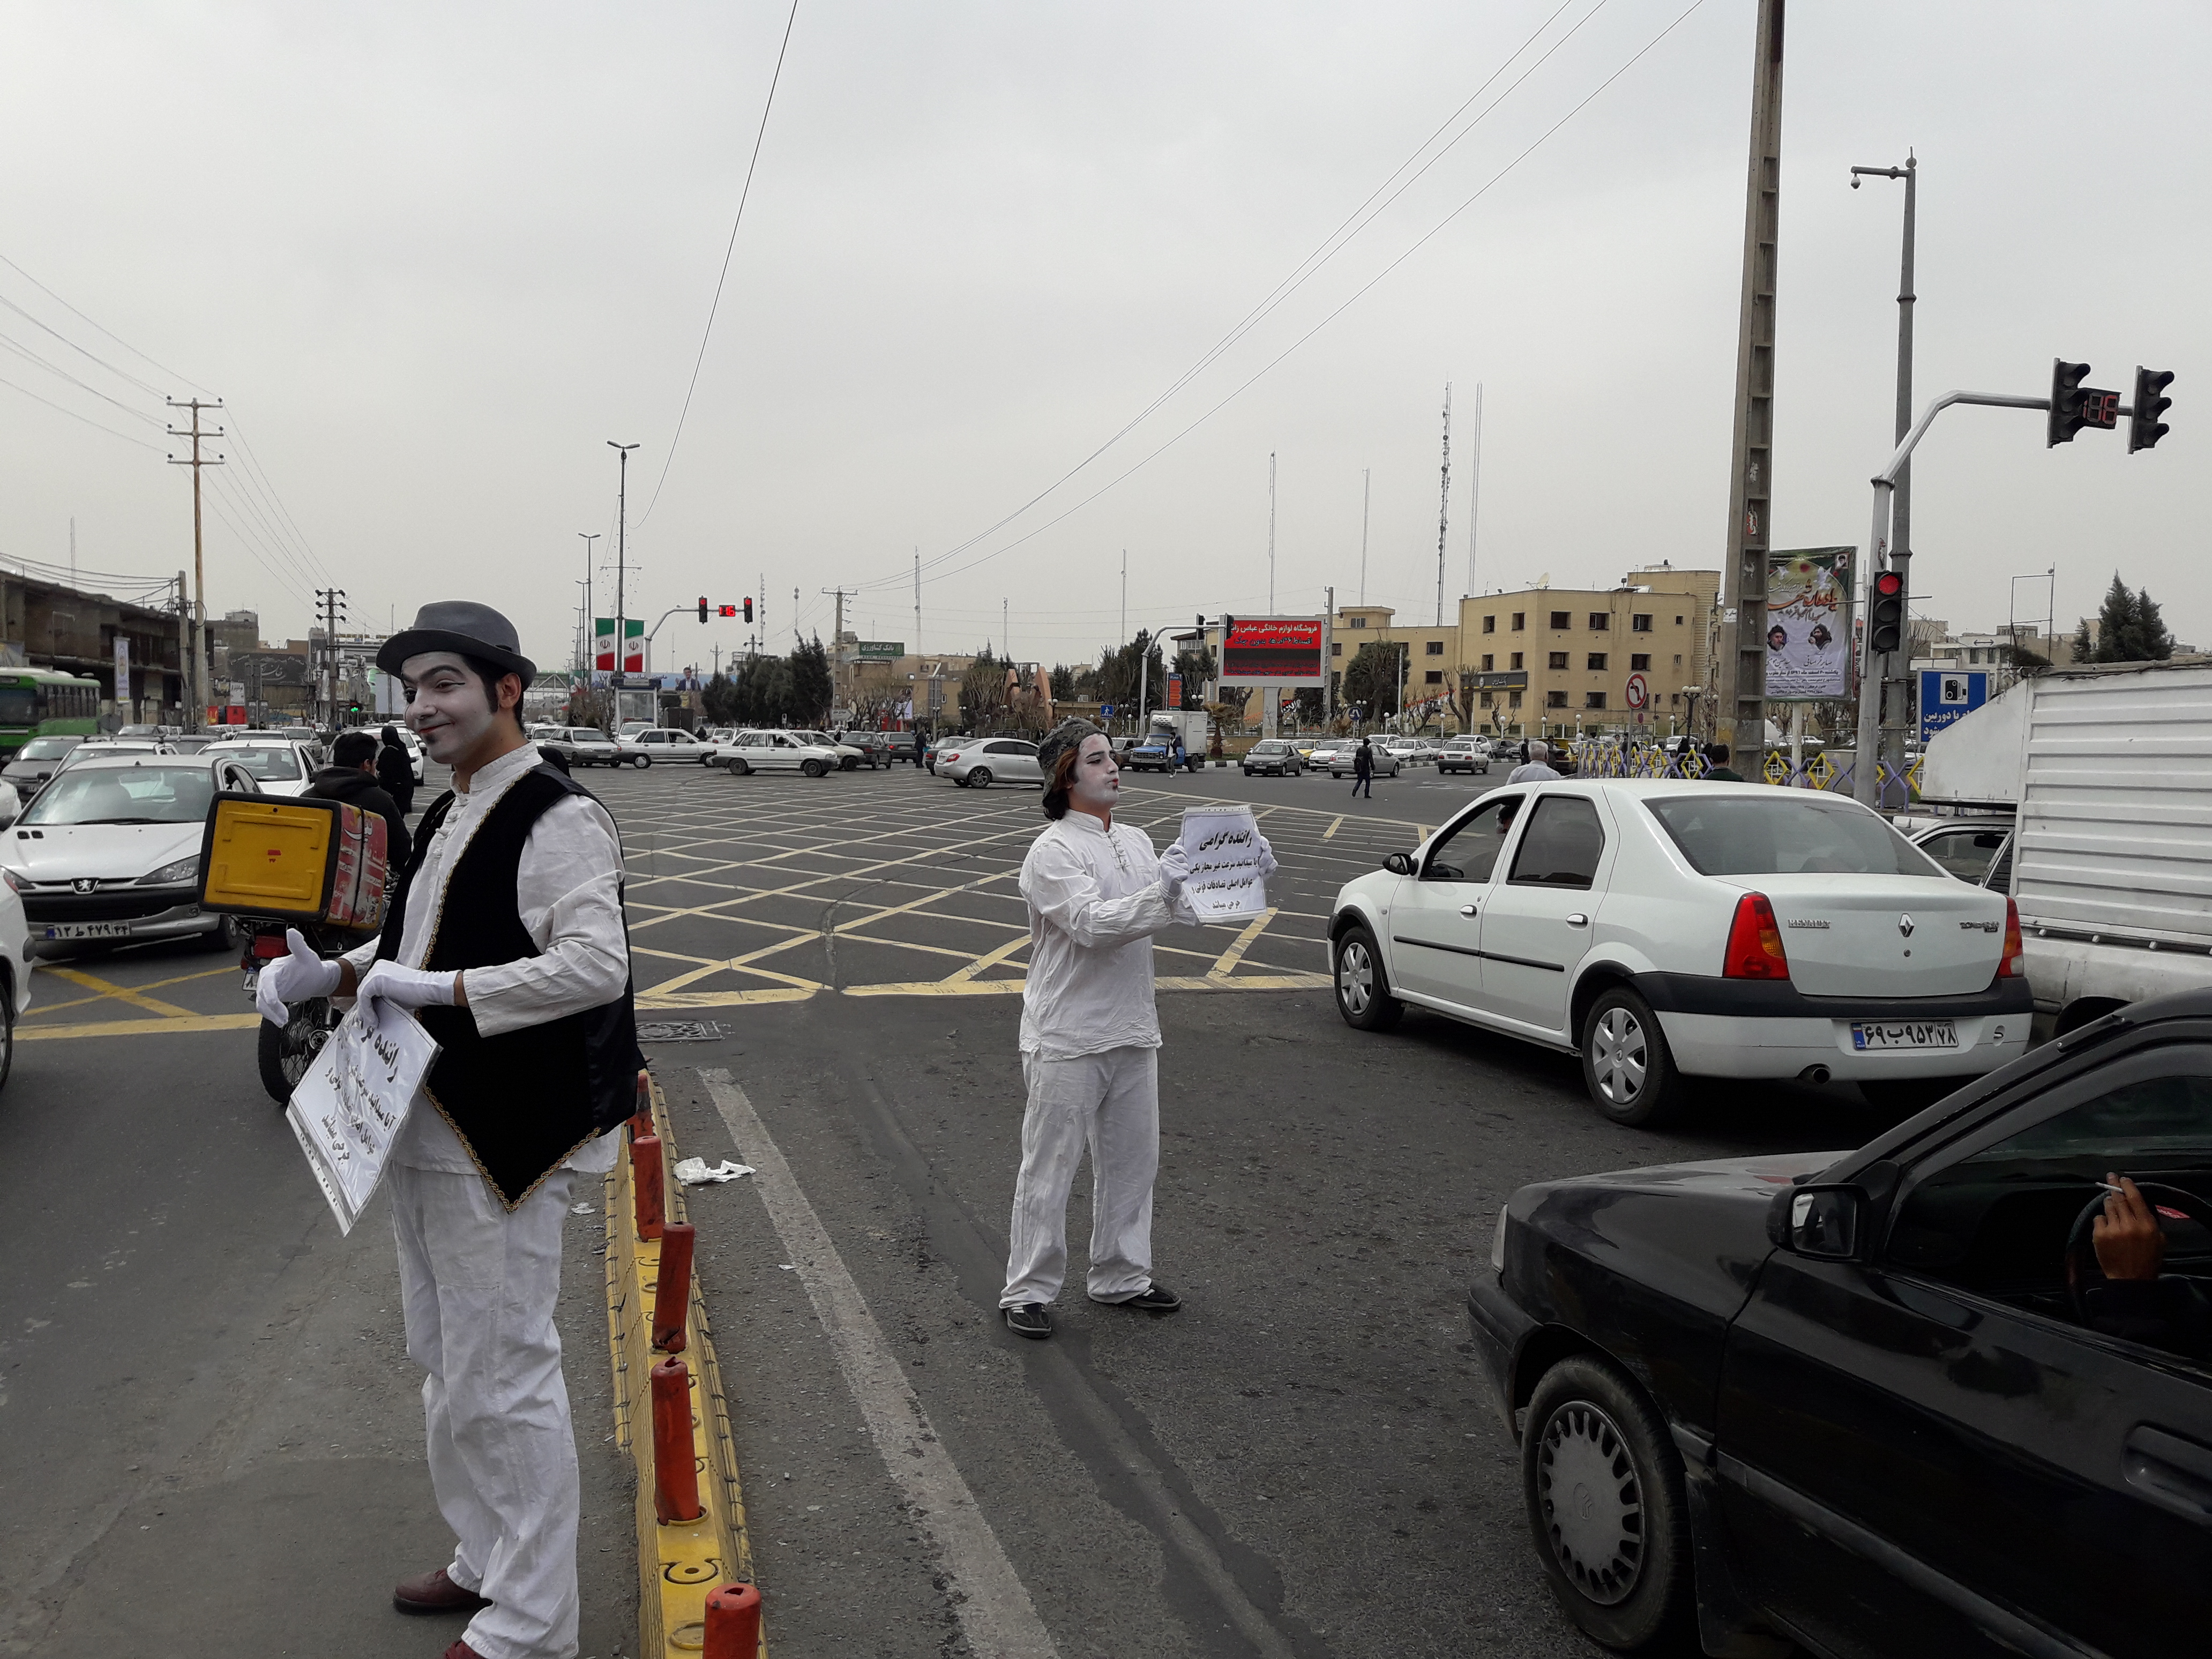 اجرای نمایش ترافیکی ( پانتومیم ) در تقاطع بلوار بسیج و خیابان امام حسین(ع) (باغ فیض)